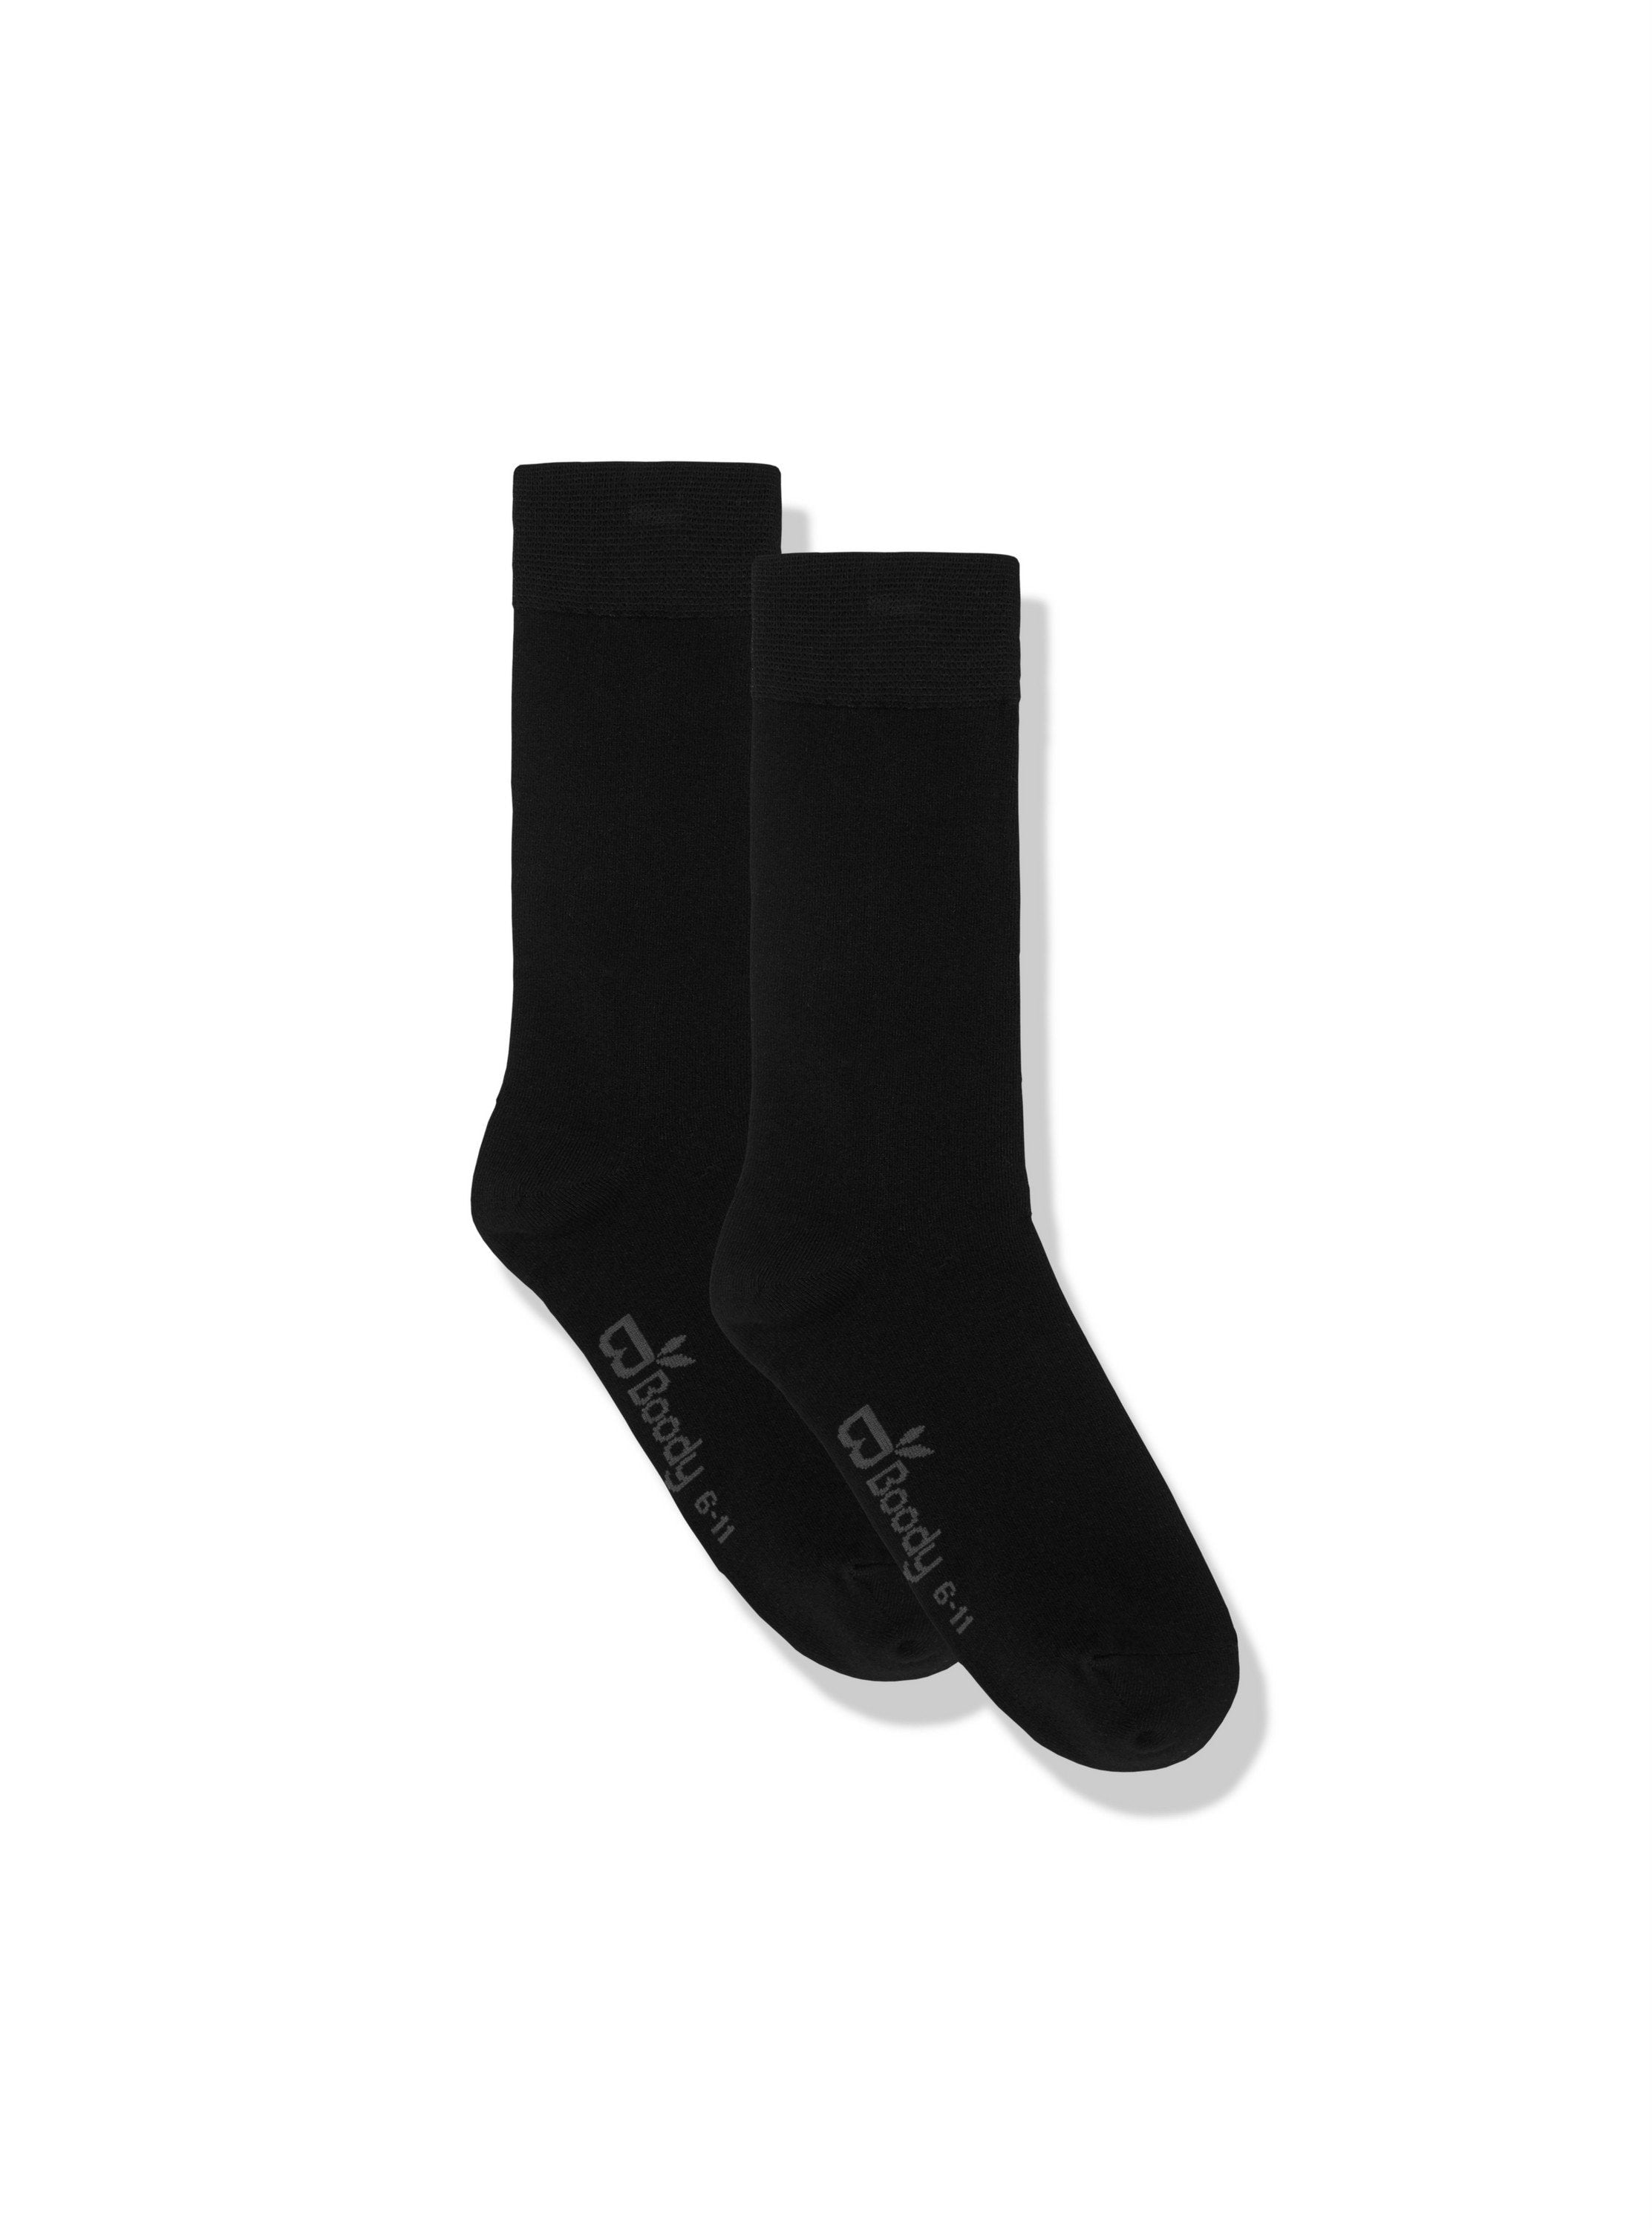 Boody | Men's Quarter Crew Sock in Black | Size I 6-11